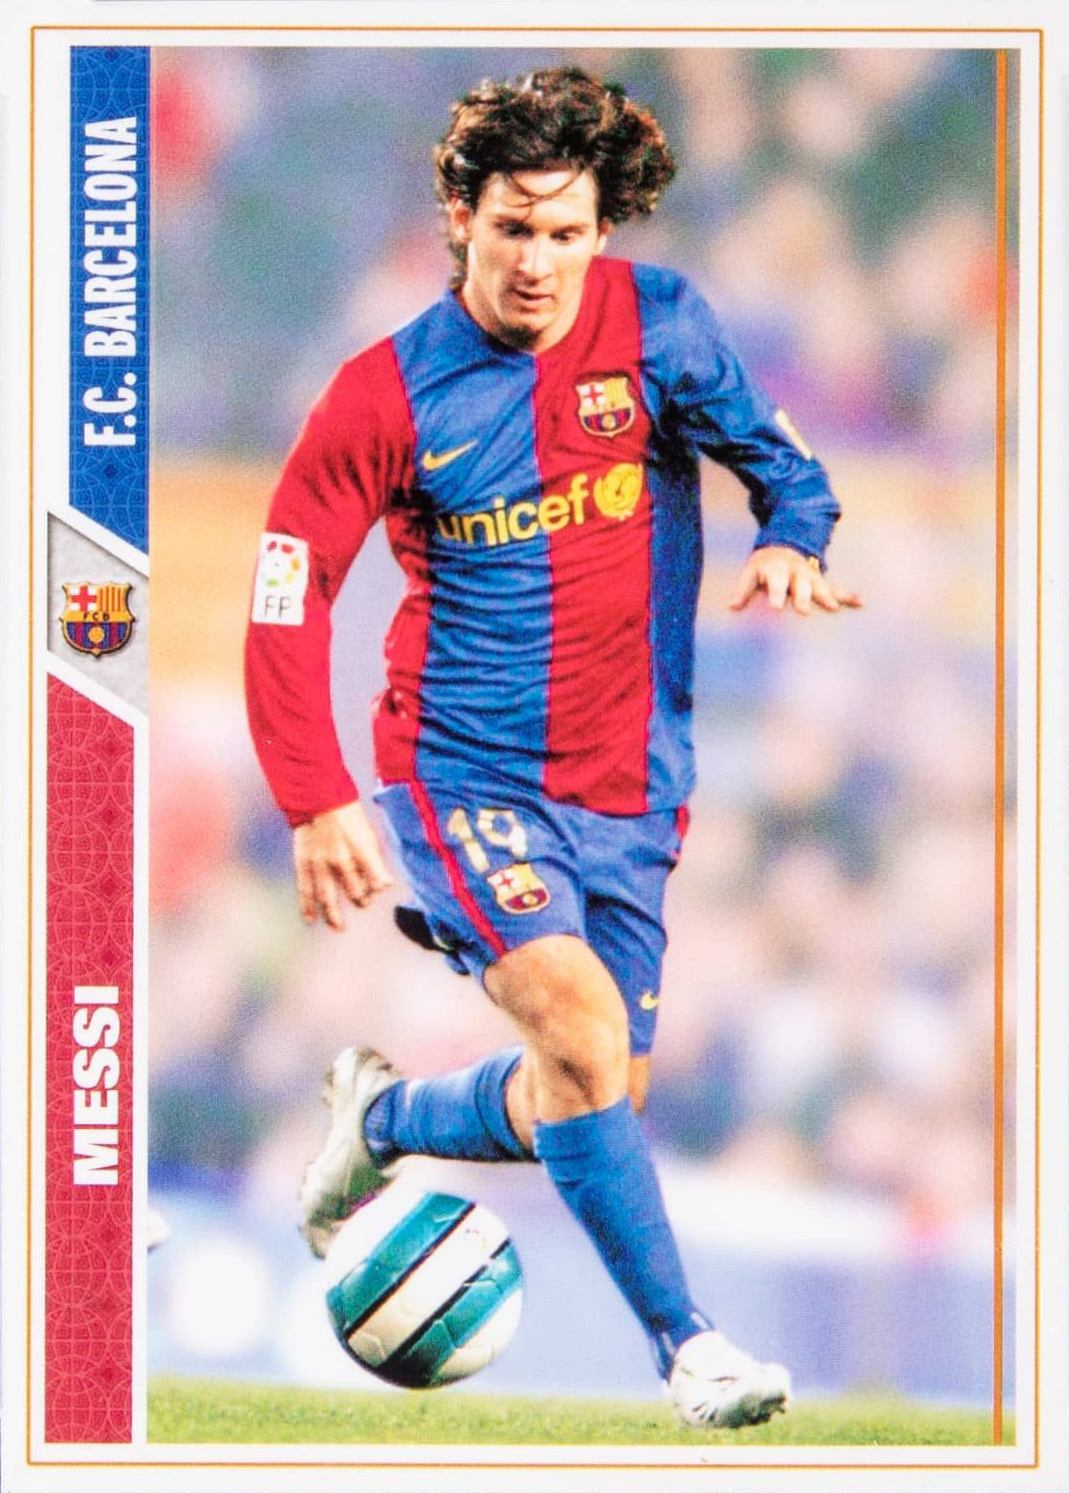 2007 Mundi Cromo Las Fichas de La Liga Lionel Messi #47 Soccer Card